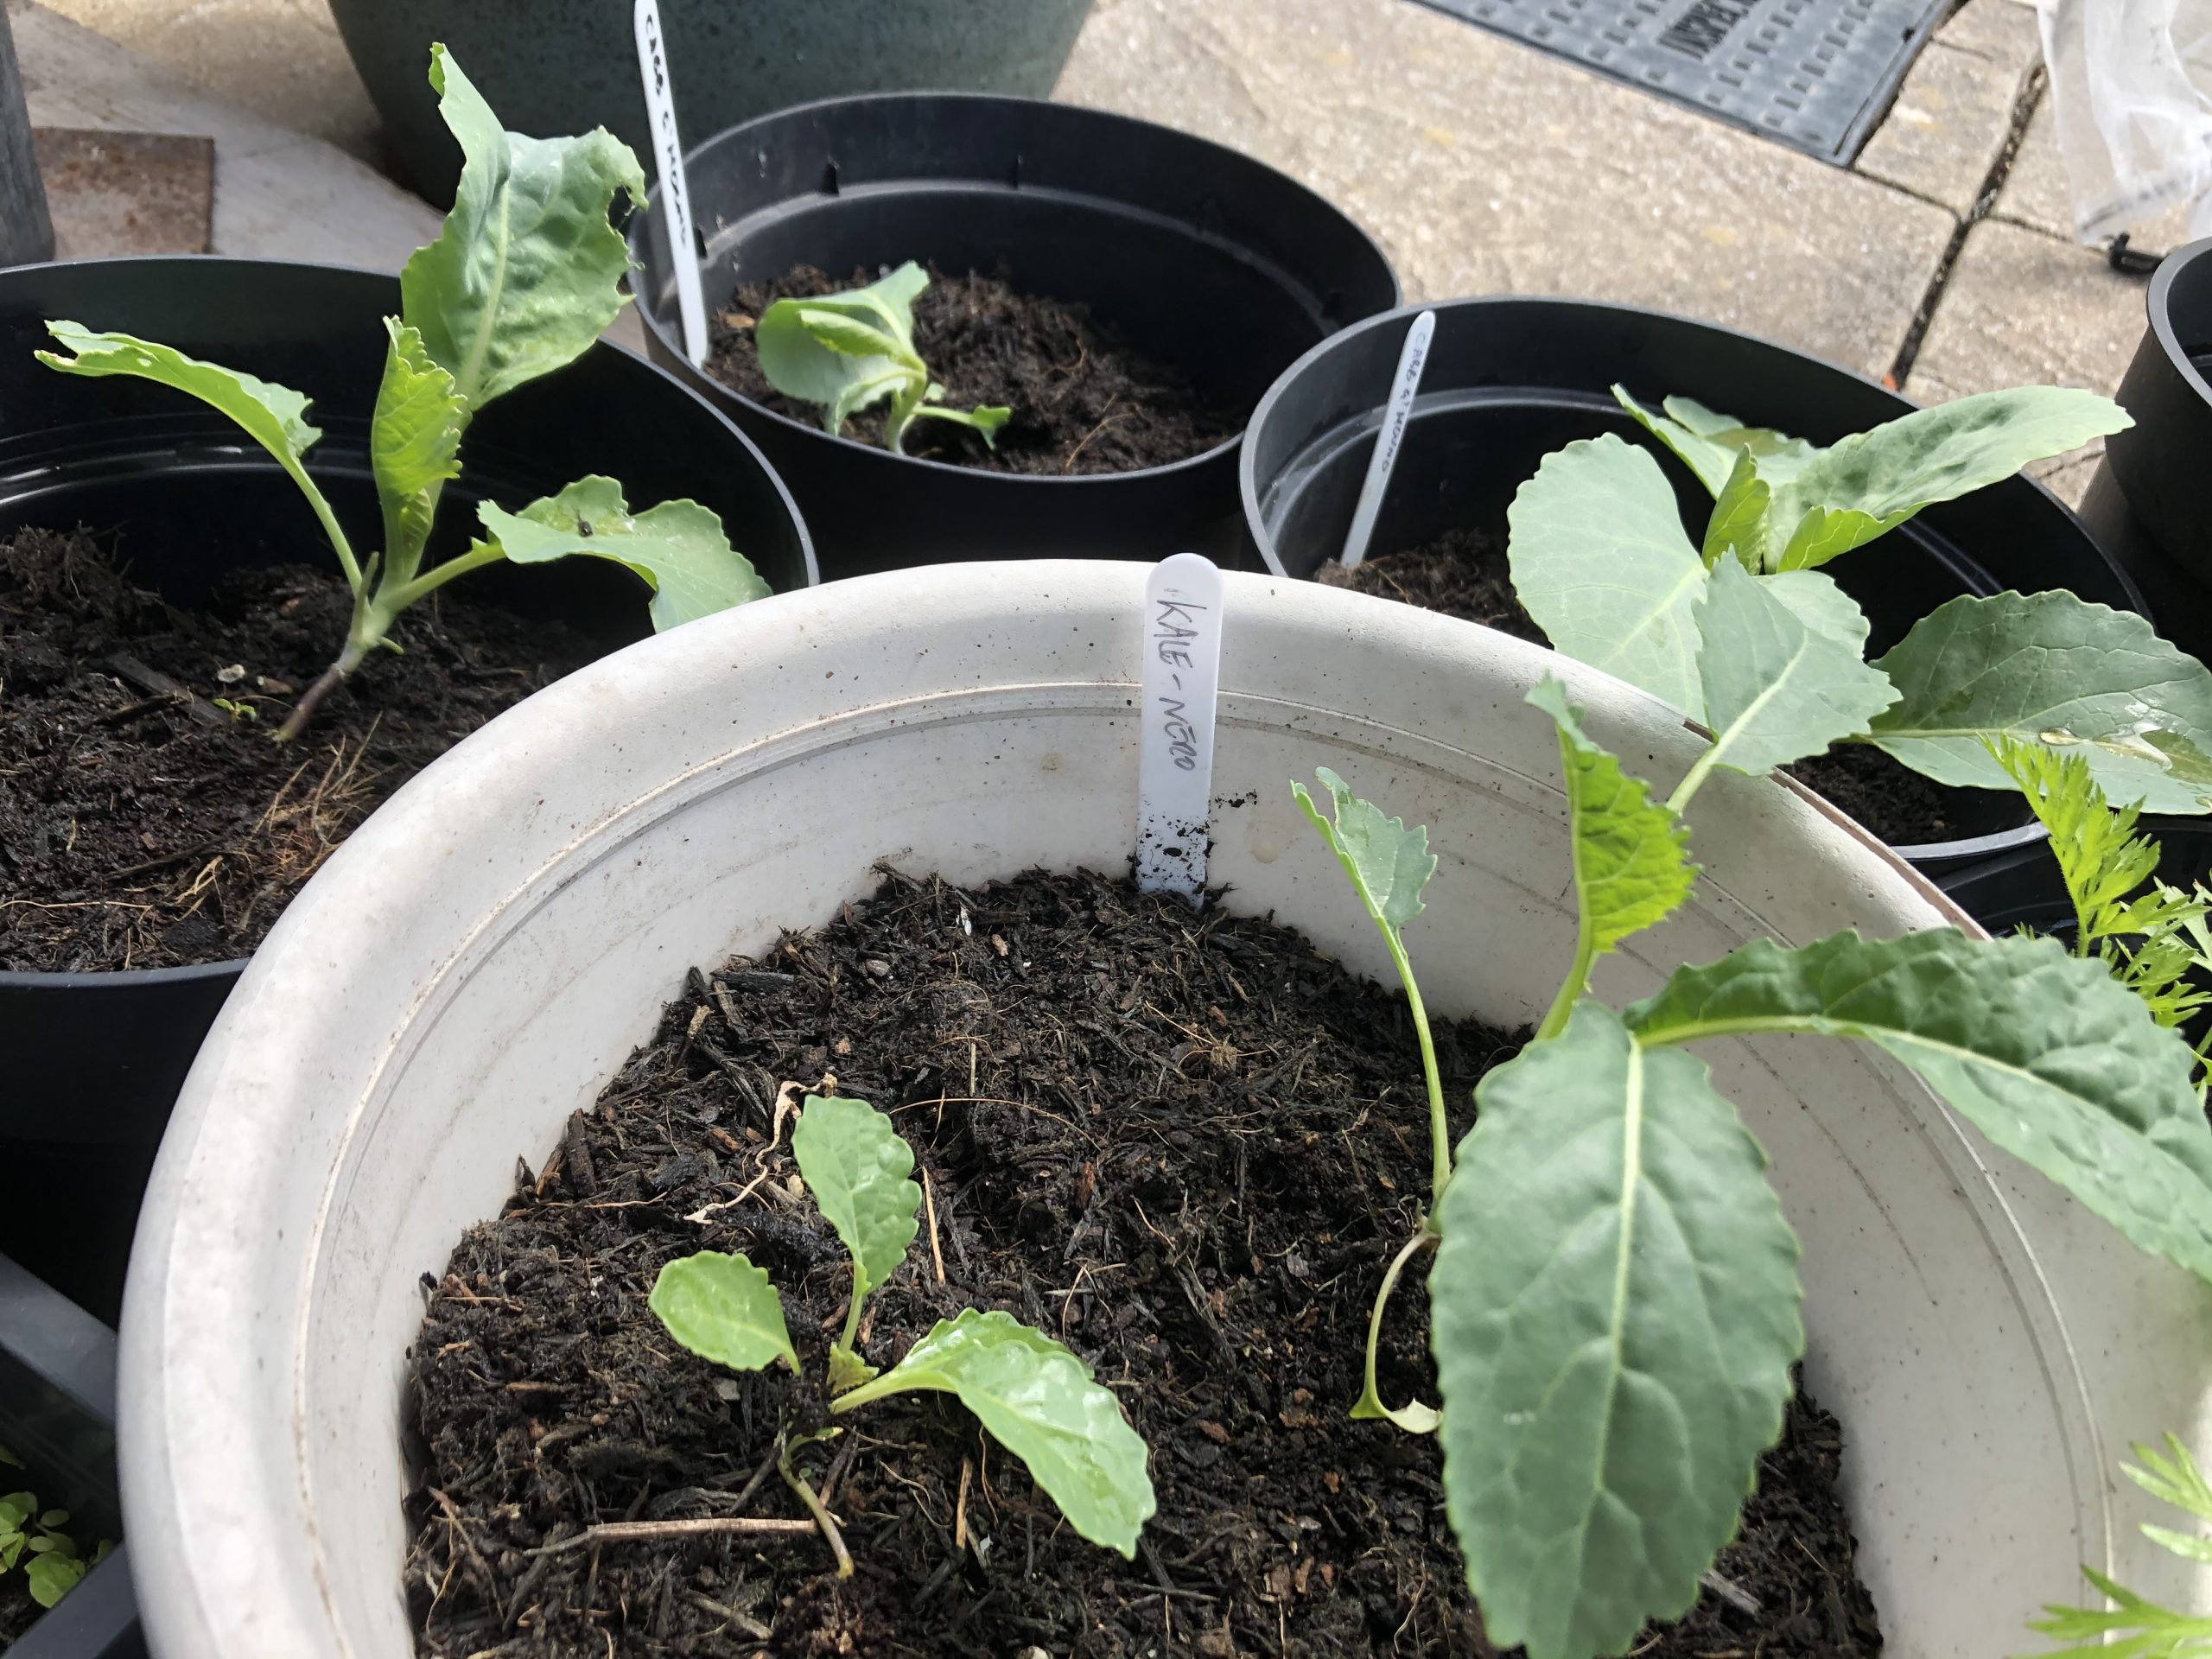 kale seedlings 7/6/20